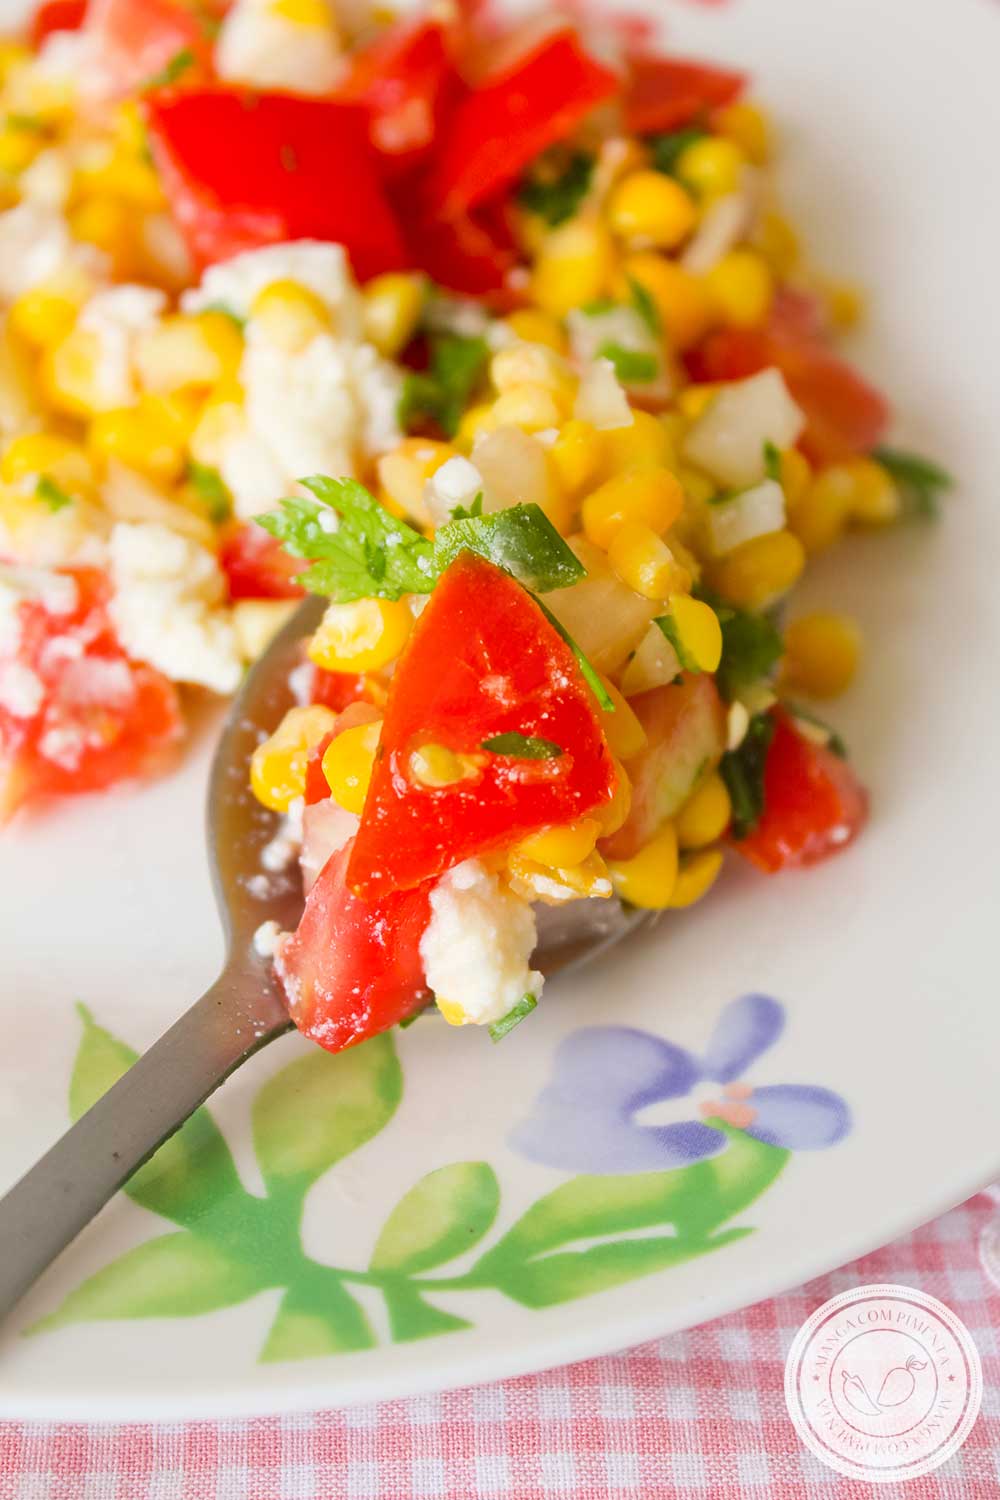 Receita de Salada de Milho com Tomate e Ricota - para o almoço em um dia quente de verão!